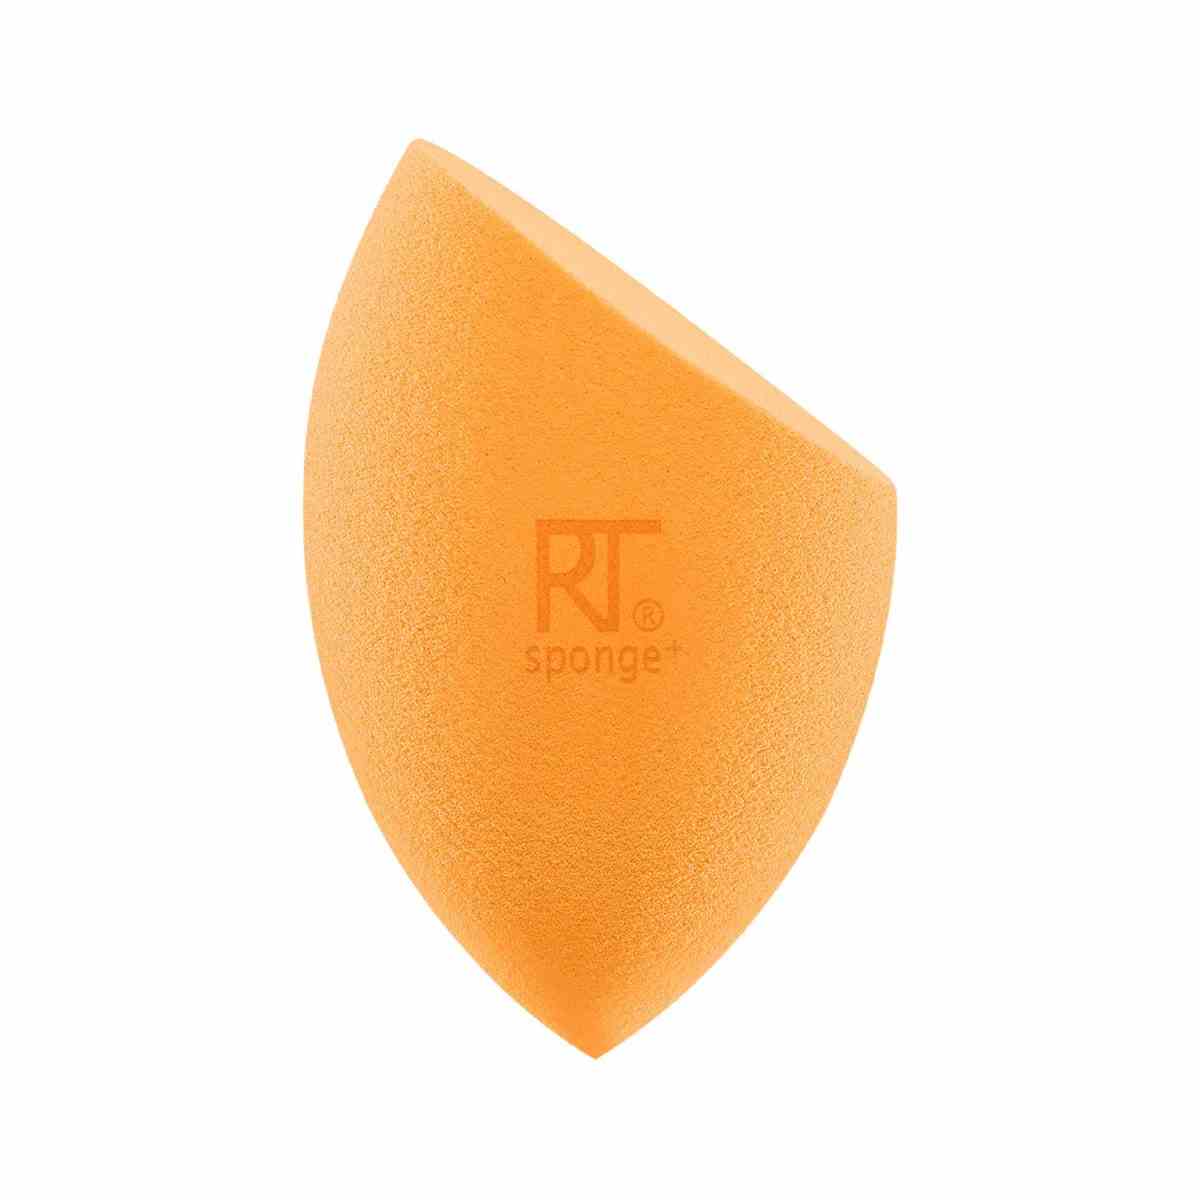 Real Techniques Miracle Complexion Sponge Orangefarbener Make-up-Schwamm mit abgeschrägter Kante auf weißem Hintergrund